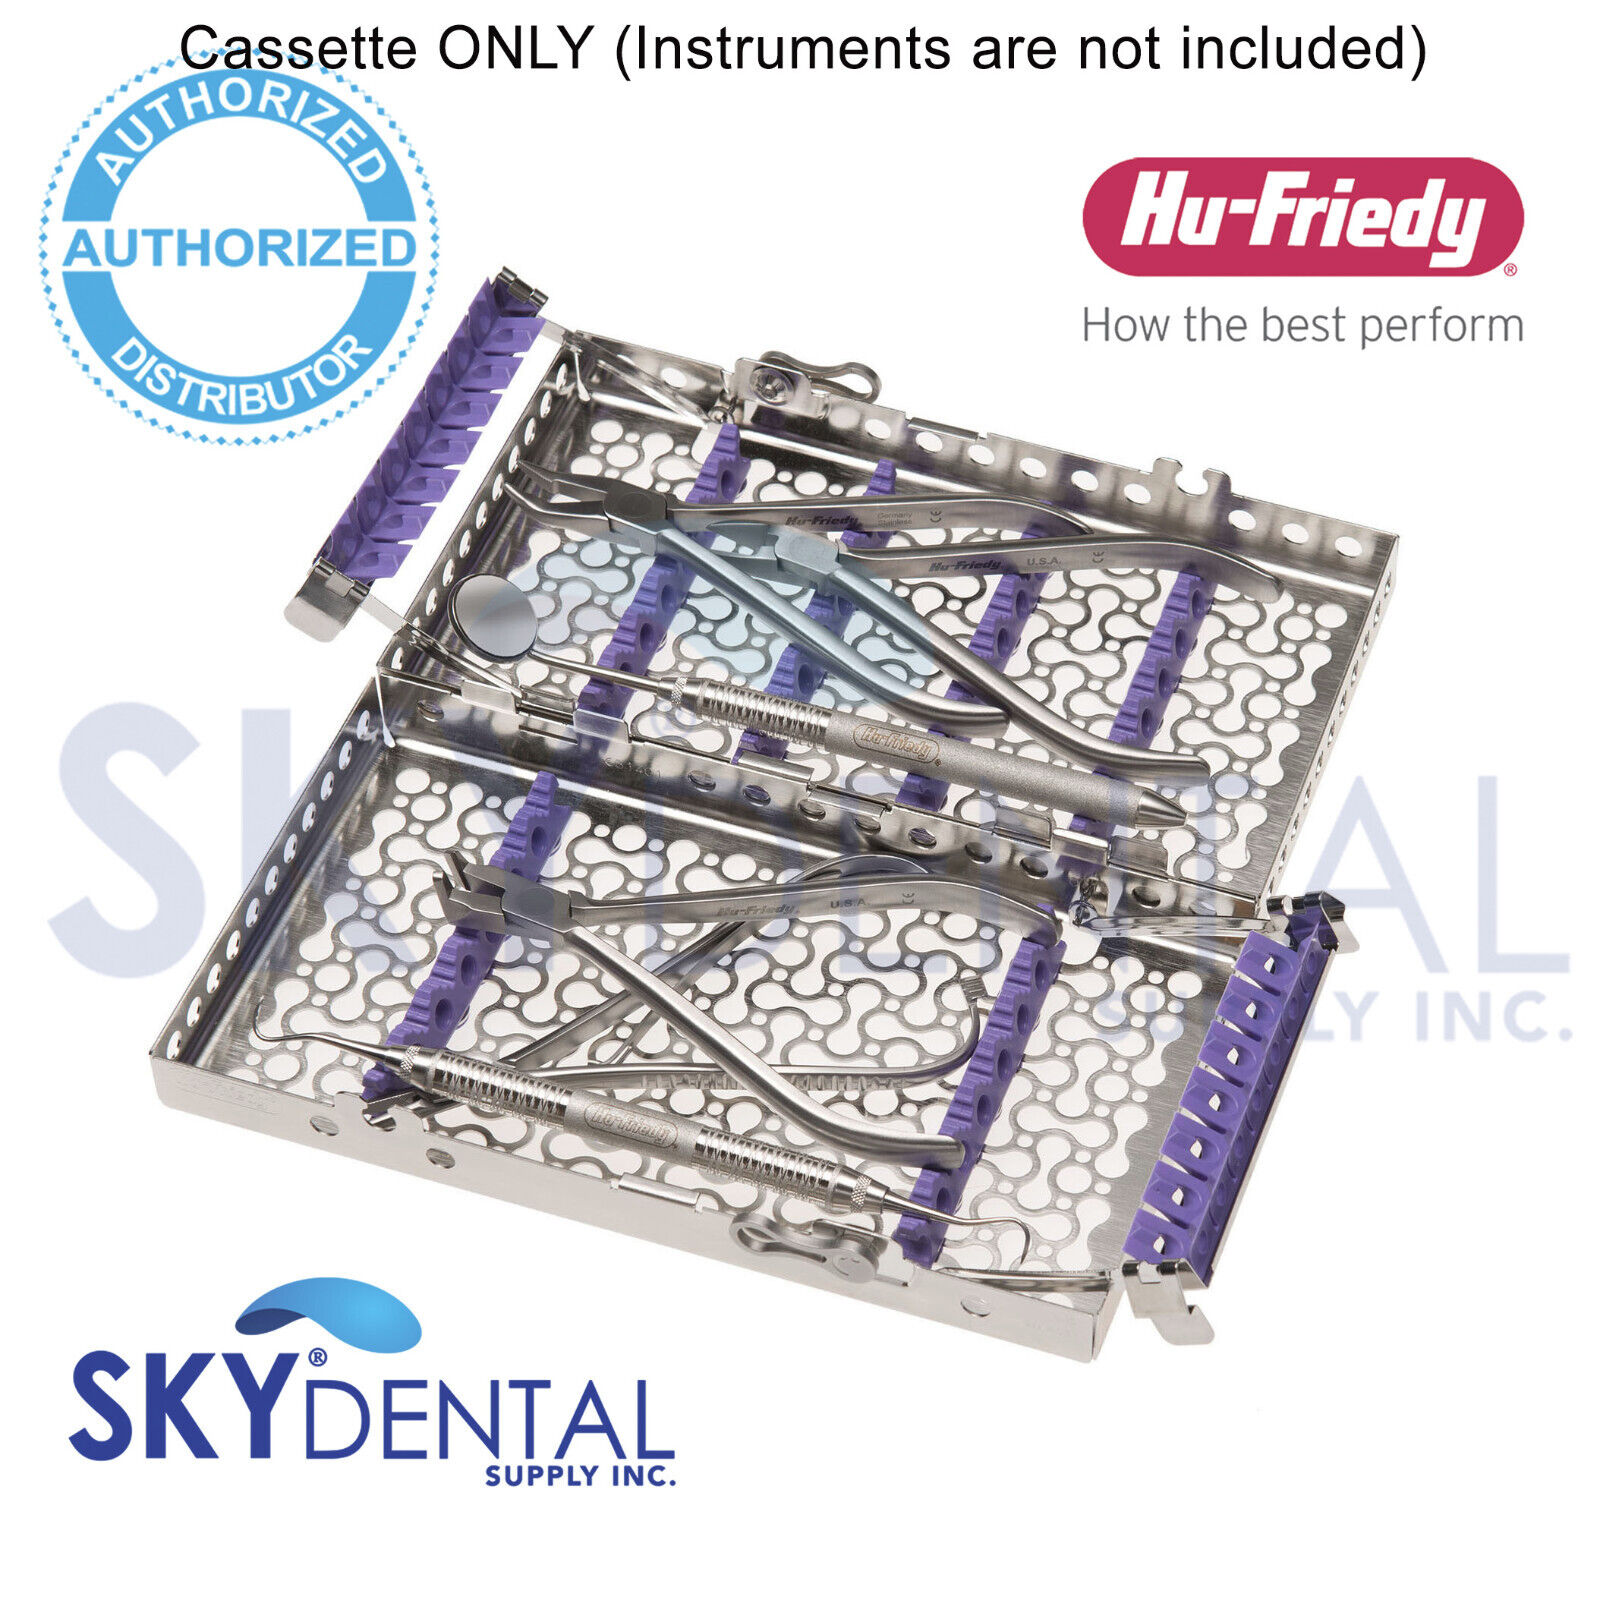 Hu-Friedy Infinity Series Double-Decker 14 Instrument Cassette Ortho /Foam Rails